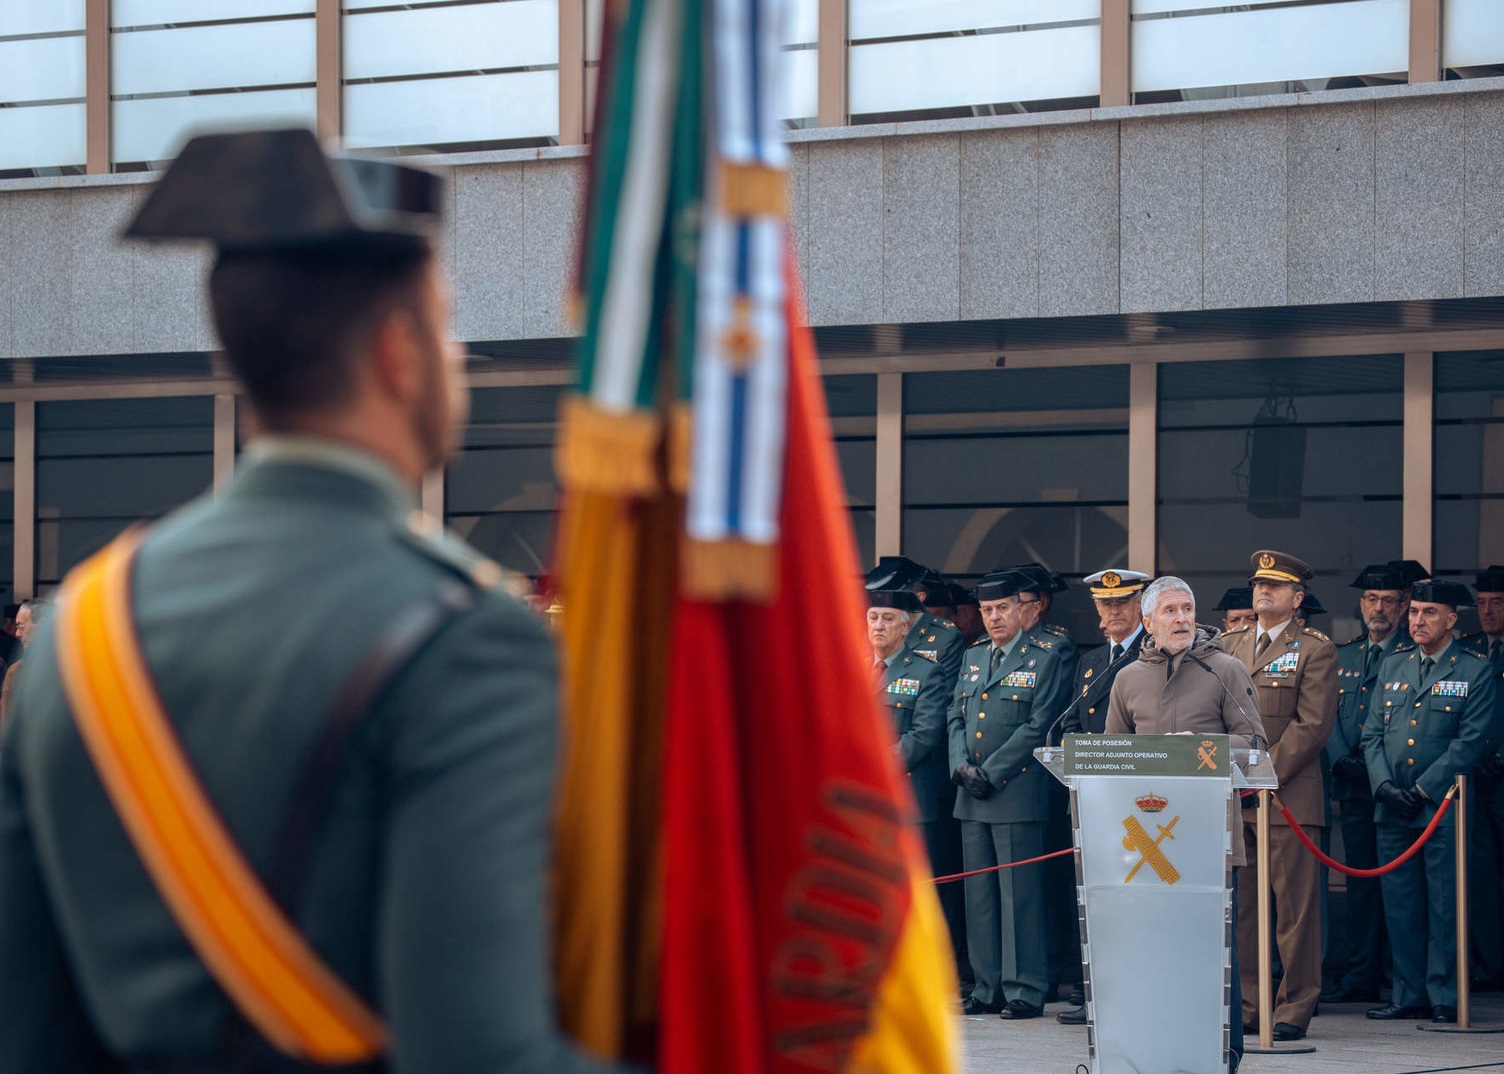 La Guardia Civil ganará cuatro generales y 276 oficiales en cuatro años